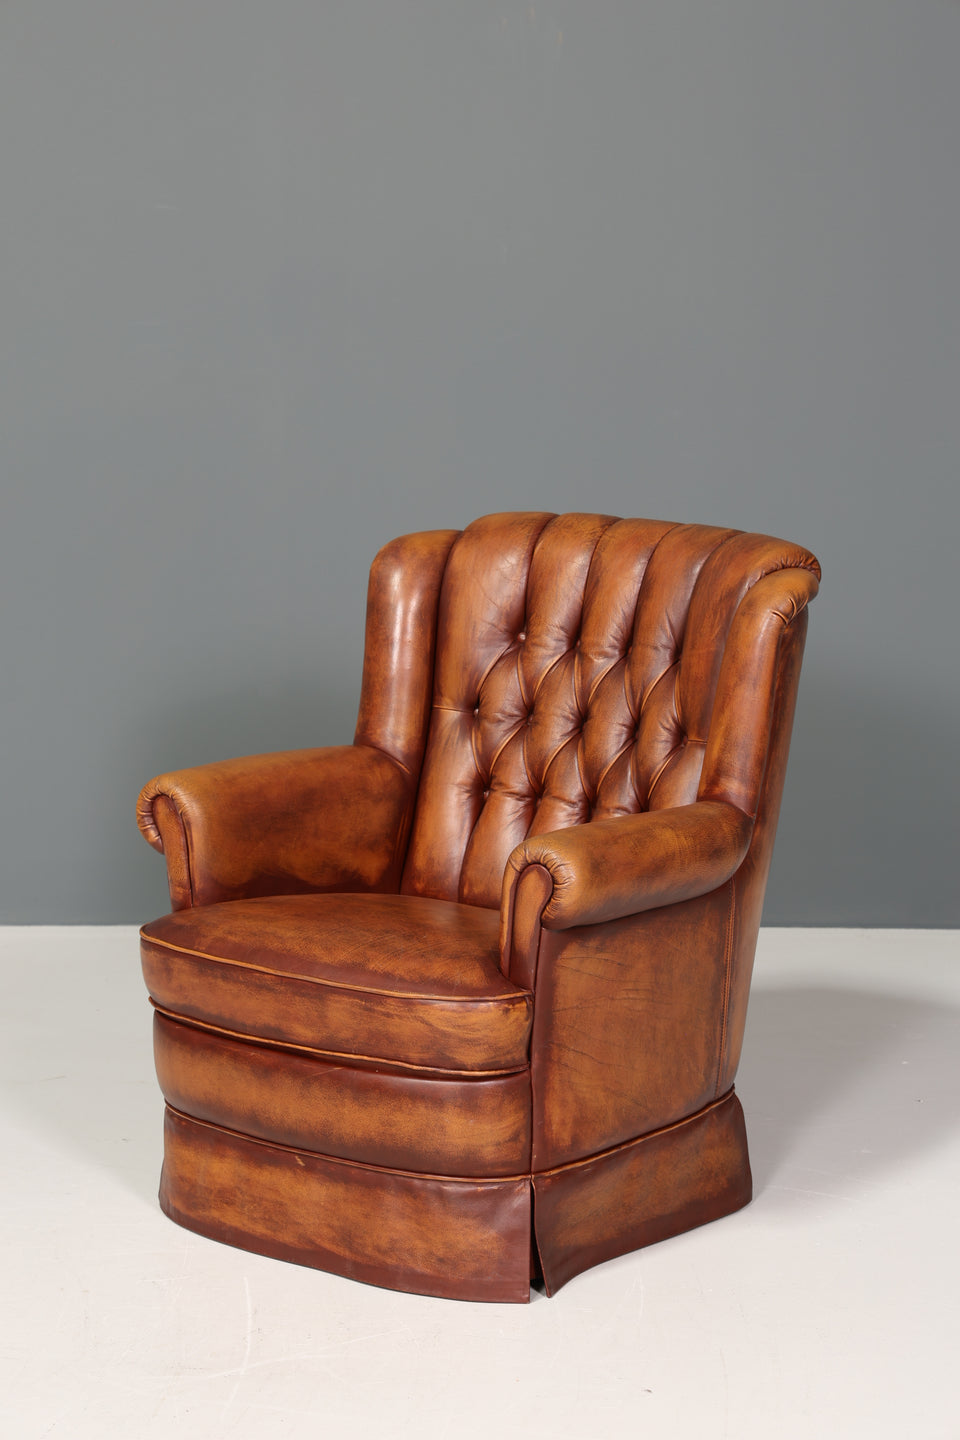 Wunderschöner Original Chesterfield echt Leder Sessel Englisch Herrensessel braun 1 von 2